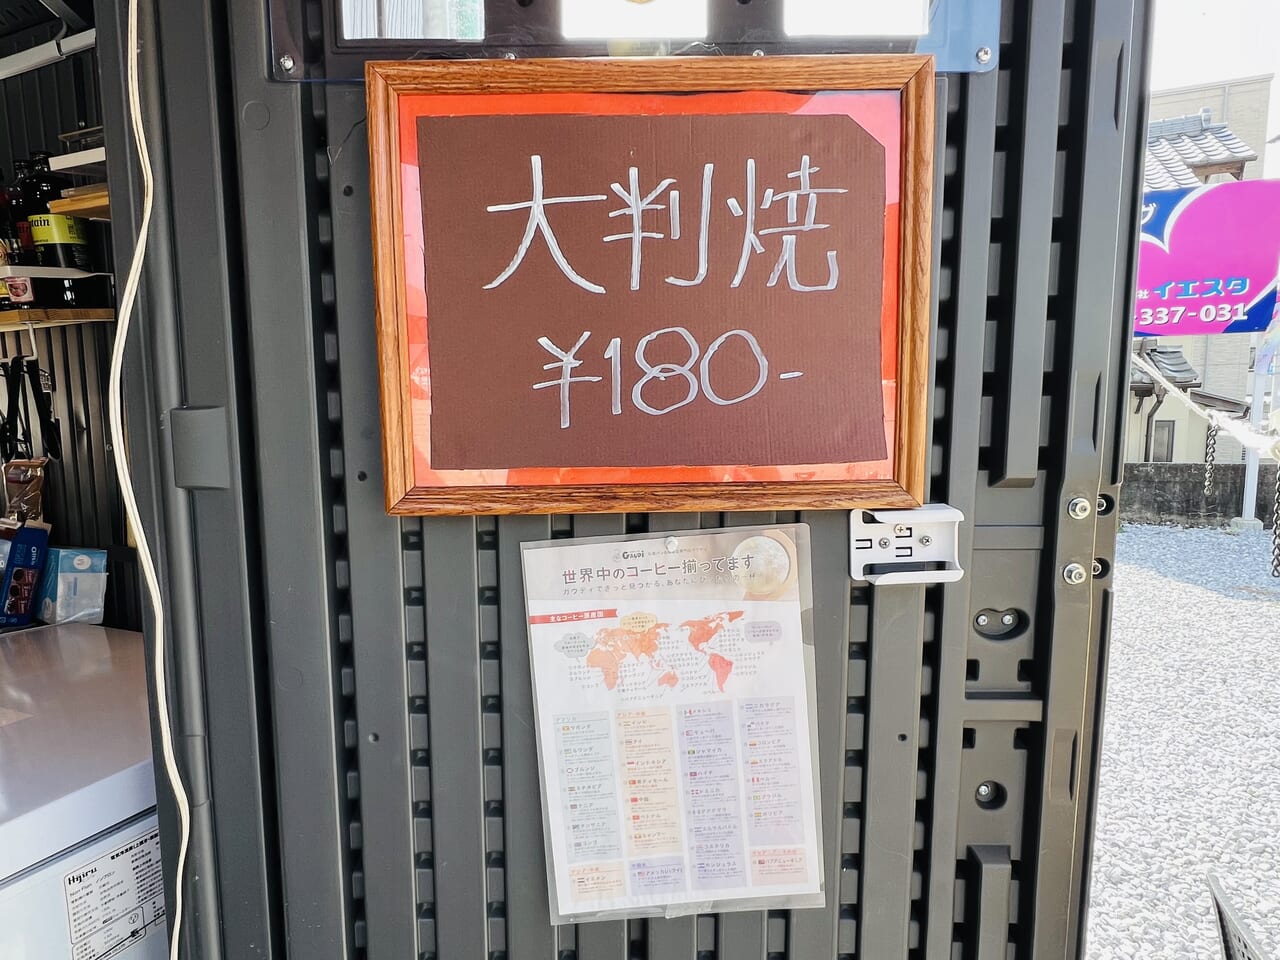 塩田町のコーヒースタンド「café Beetle」の外観